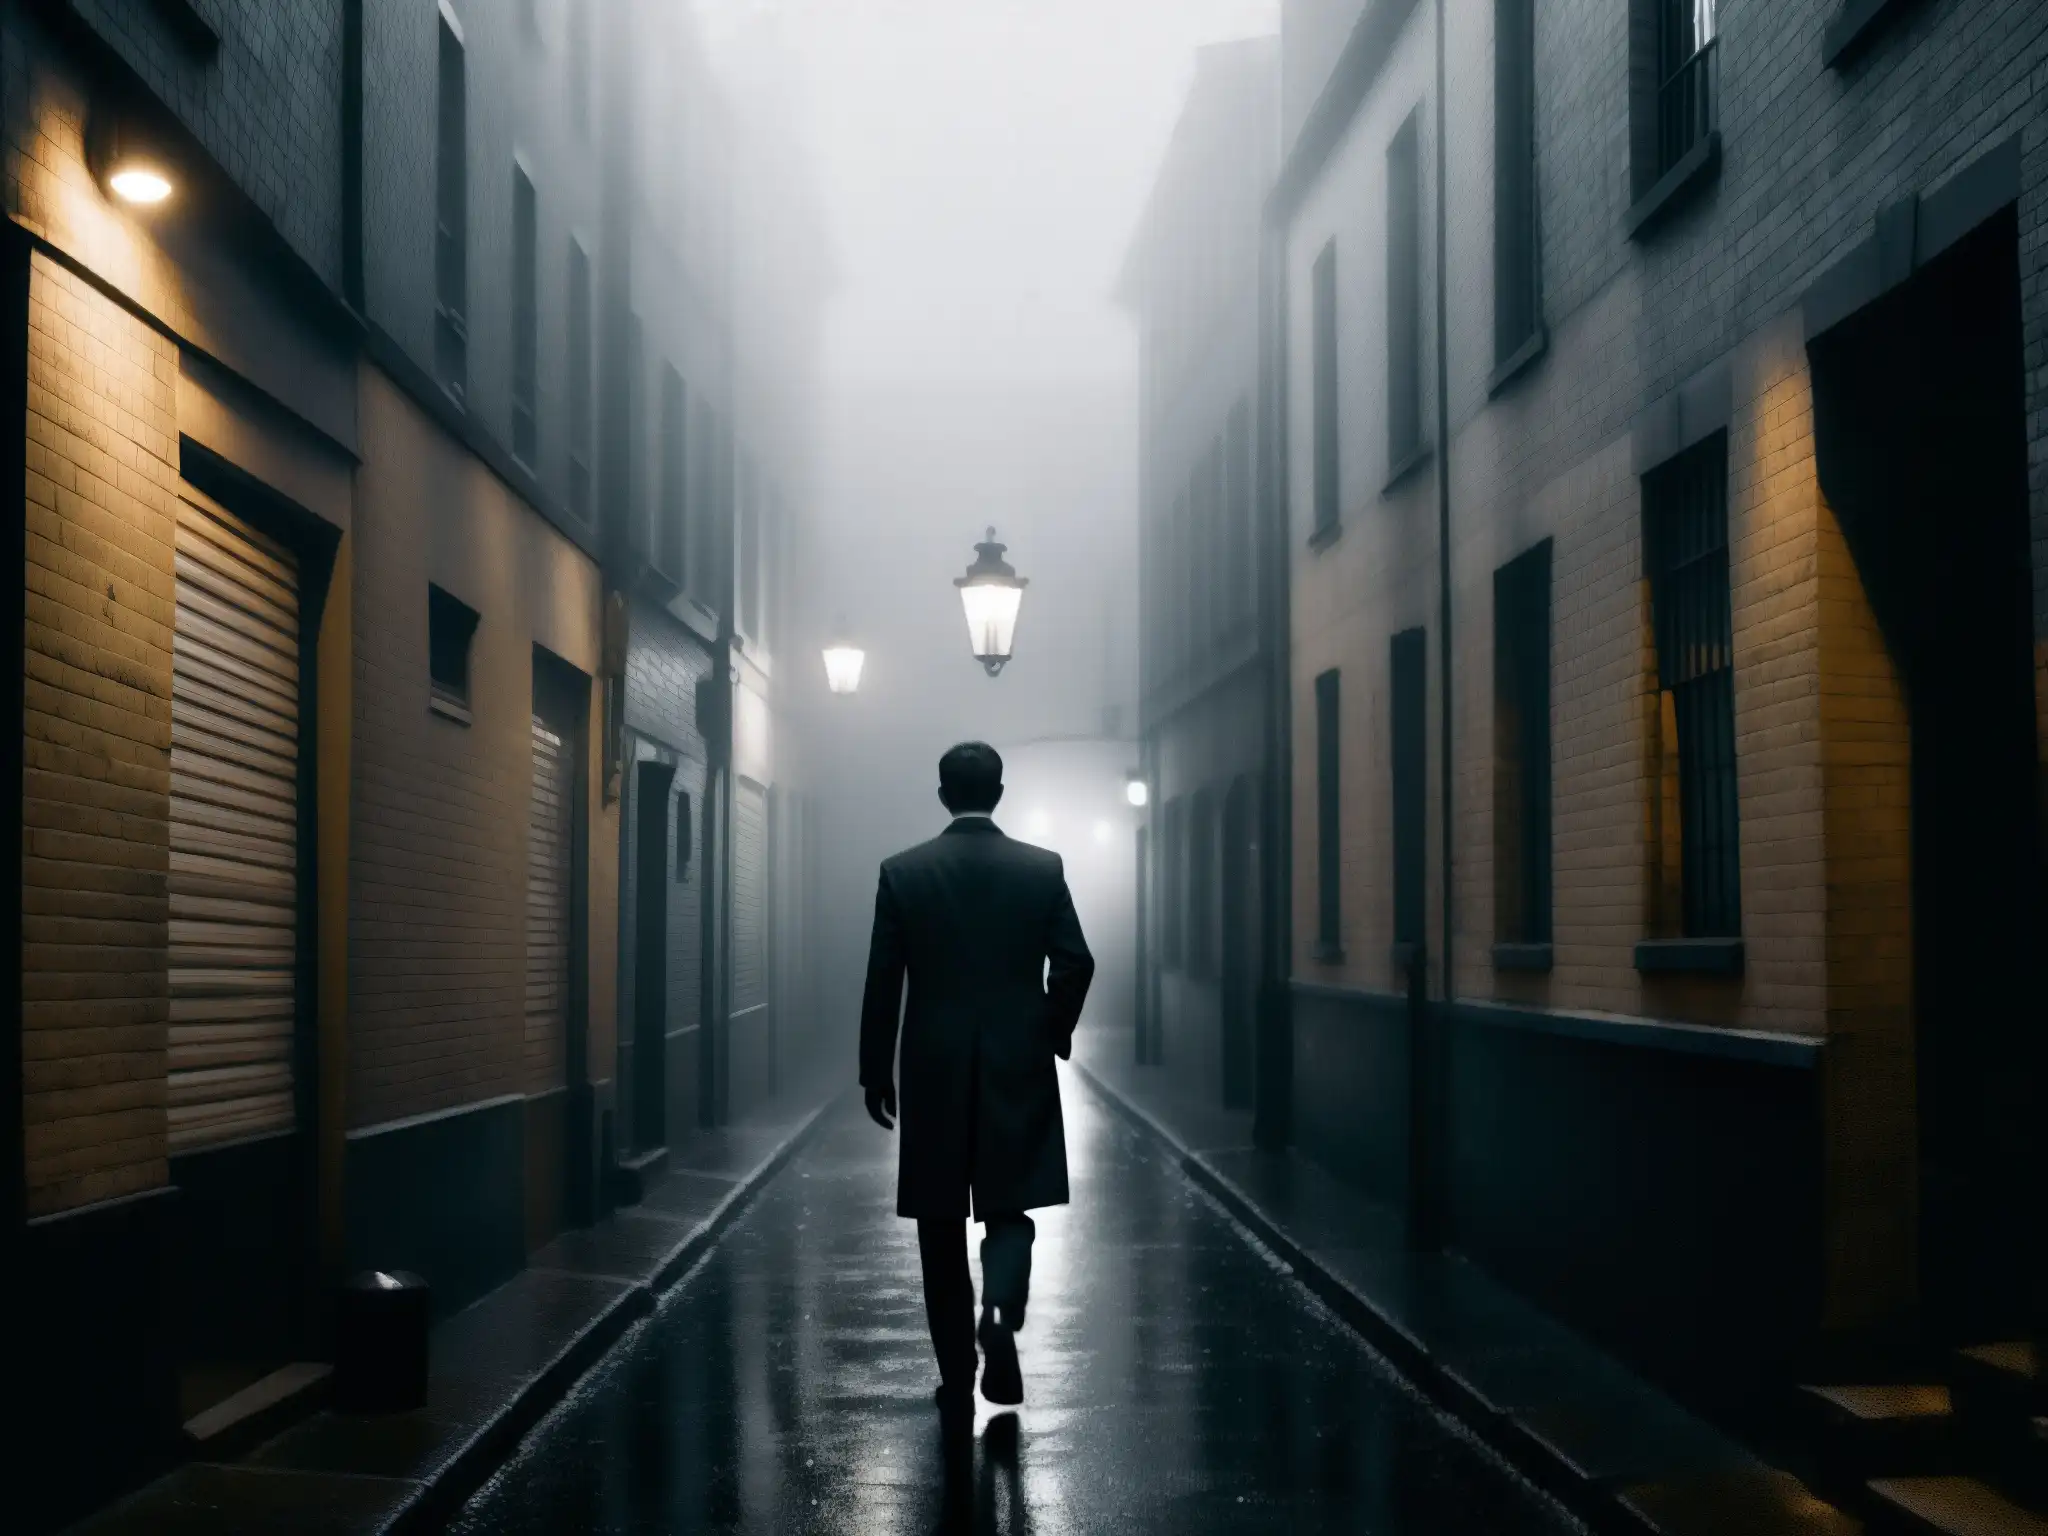 Hombres de Negro leyenda urbana: misterioso callejón en blanco y negro, figura sombría al final, atmósfera de film noir